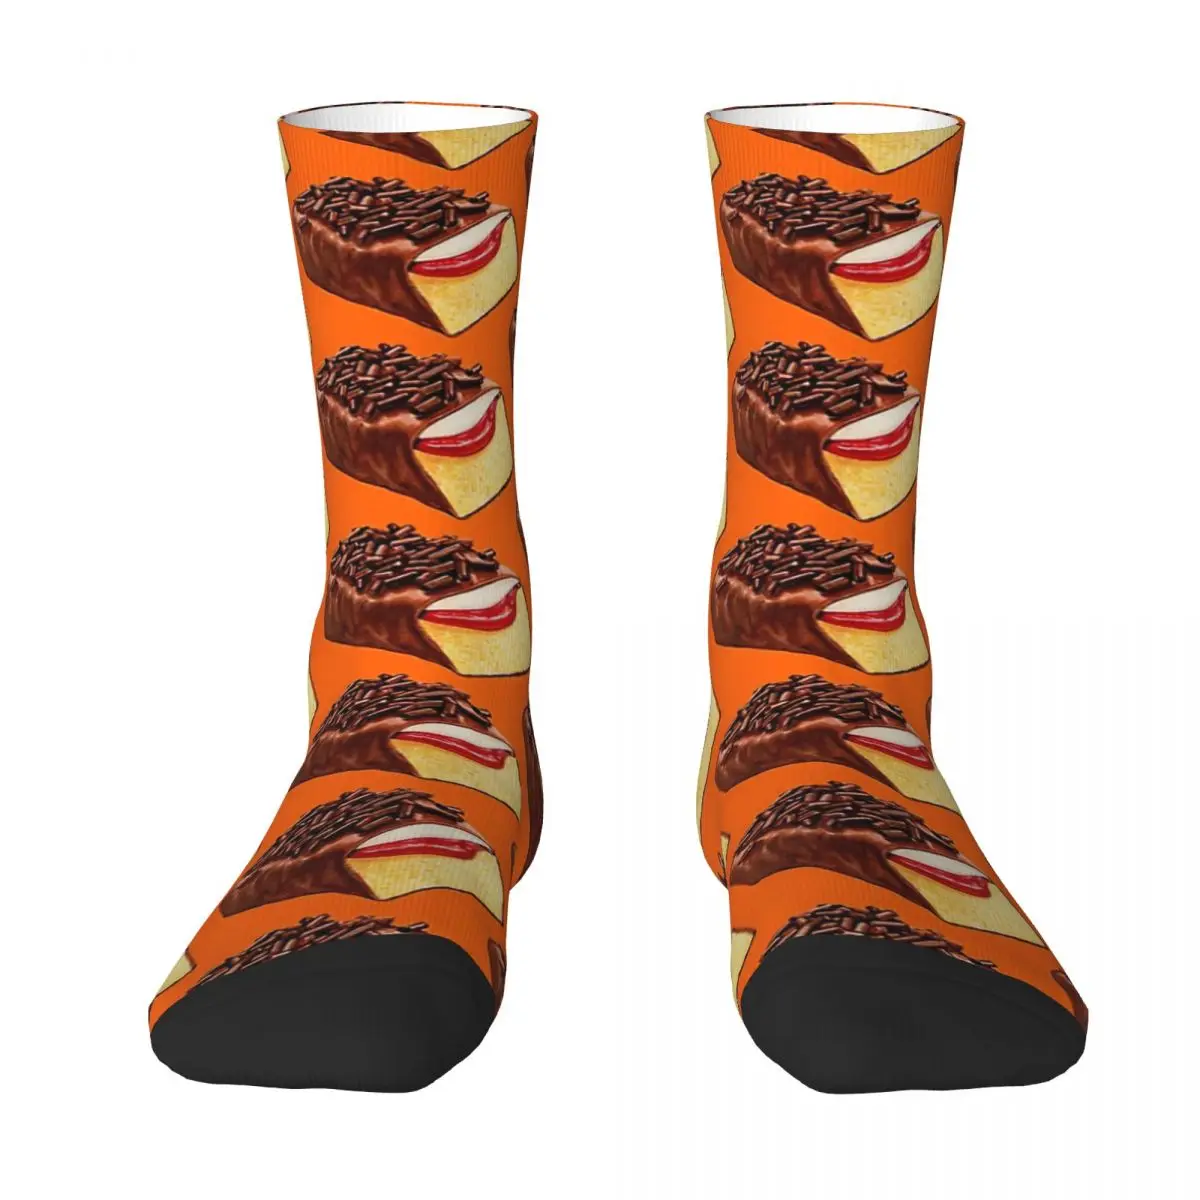 Gansimо оранжевые носки для взрослых, носки унисекс, мужские носки женские носки gansimо оранжевые носки для взрослых носки унисекс мужские носки женские носки